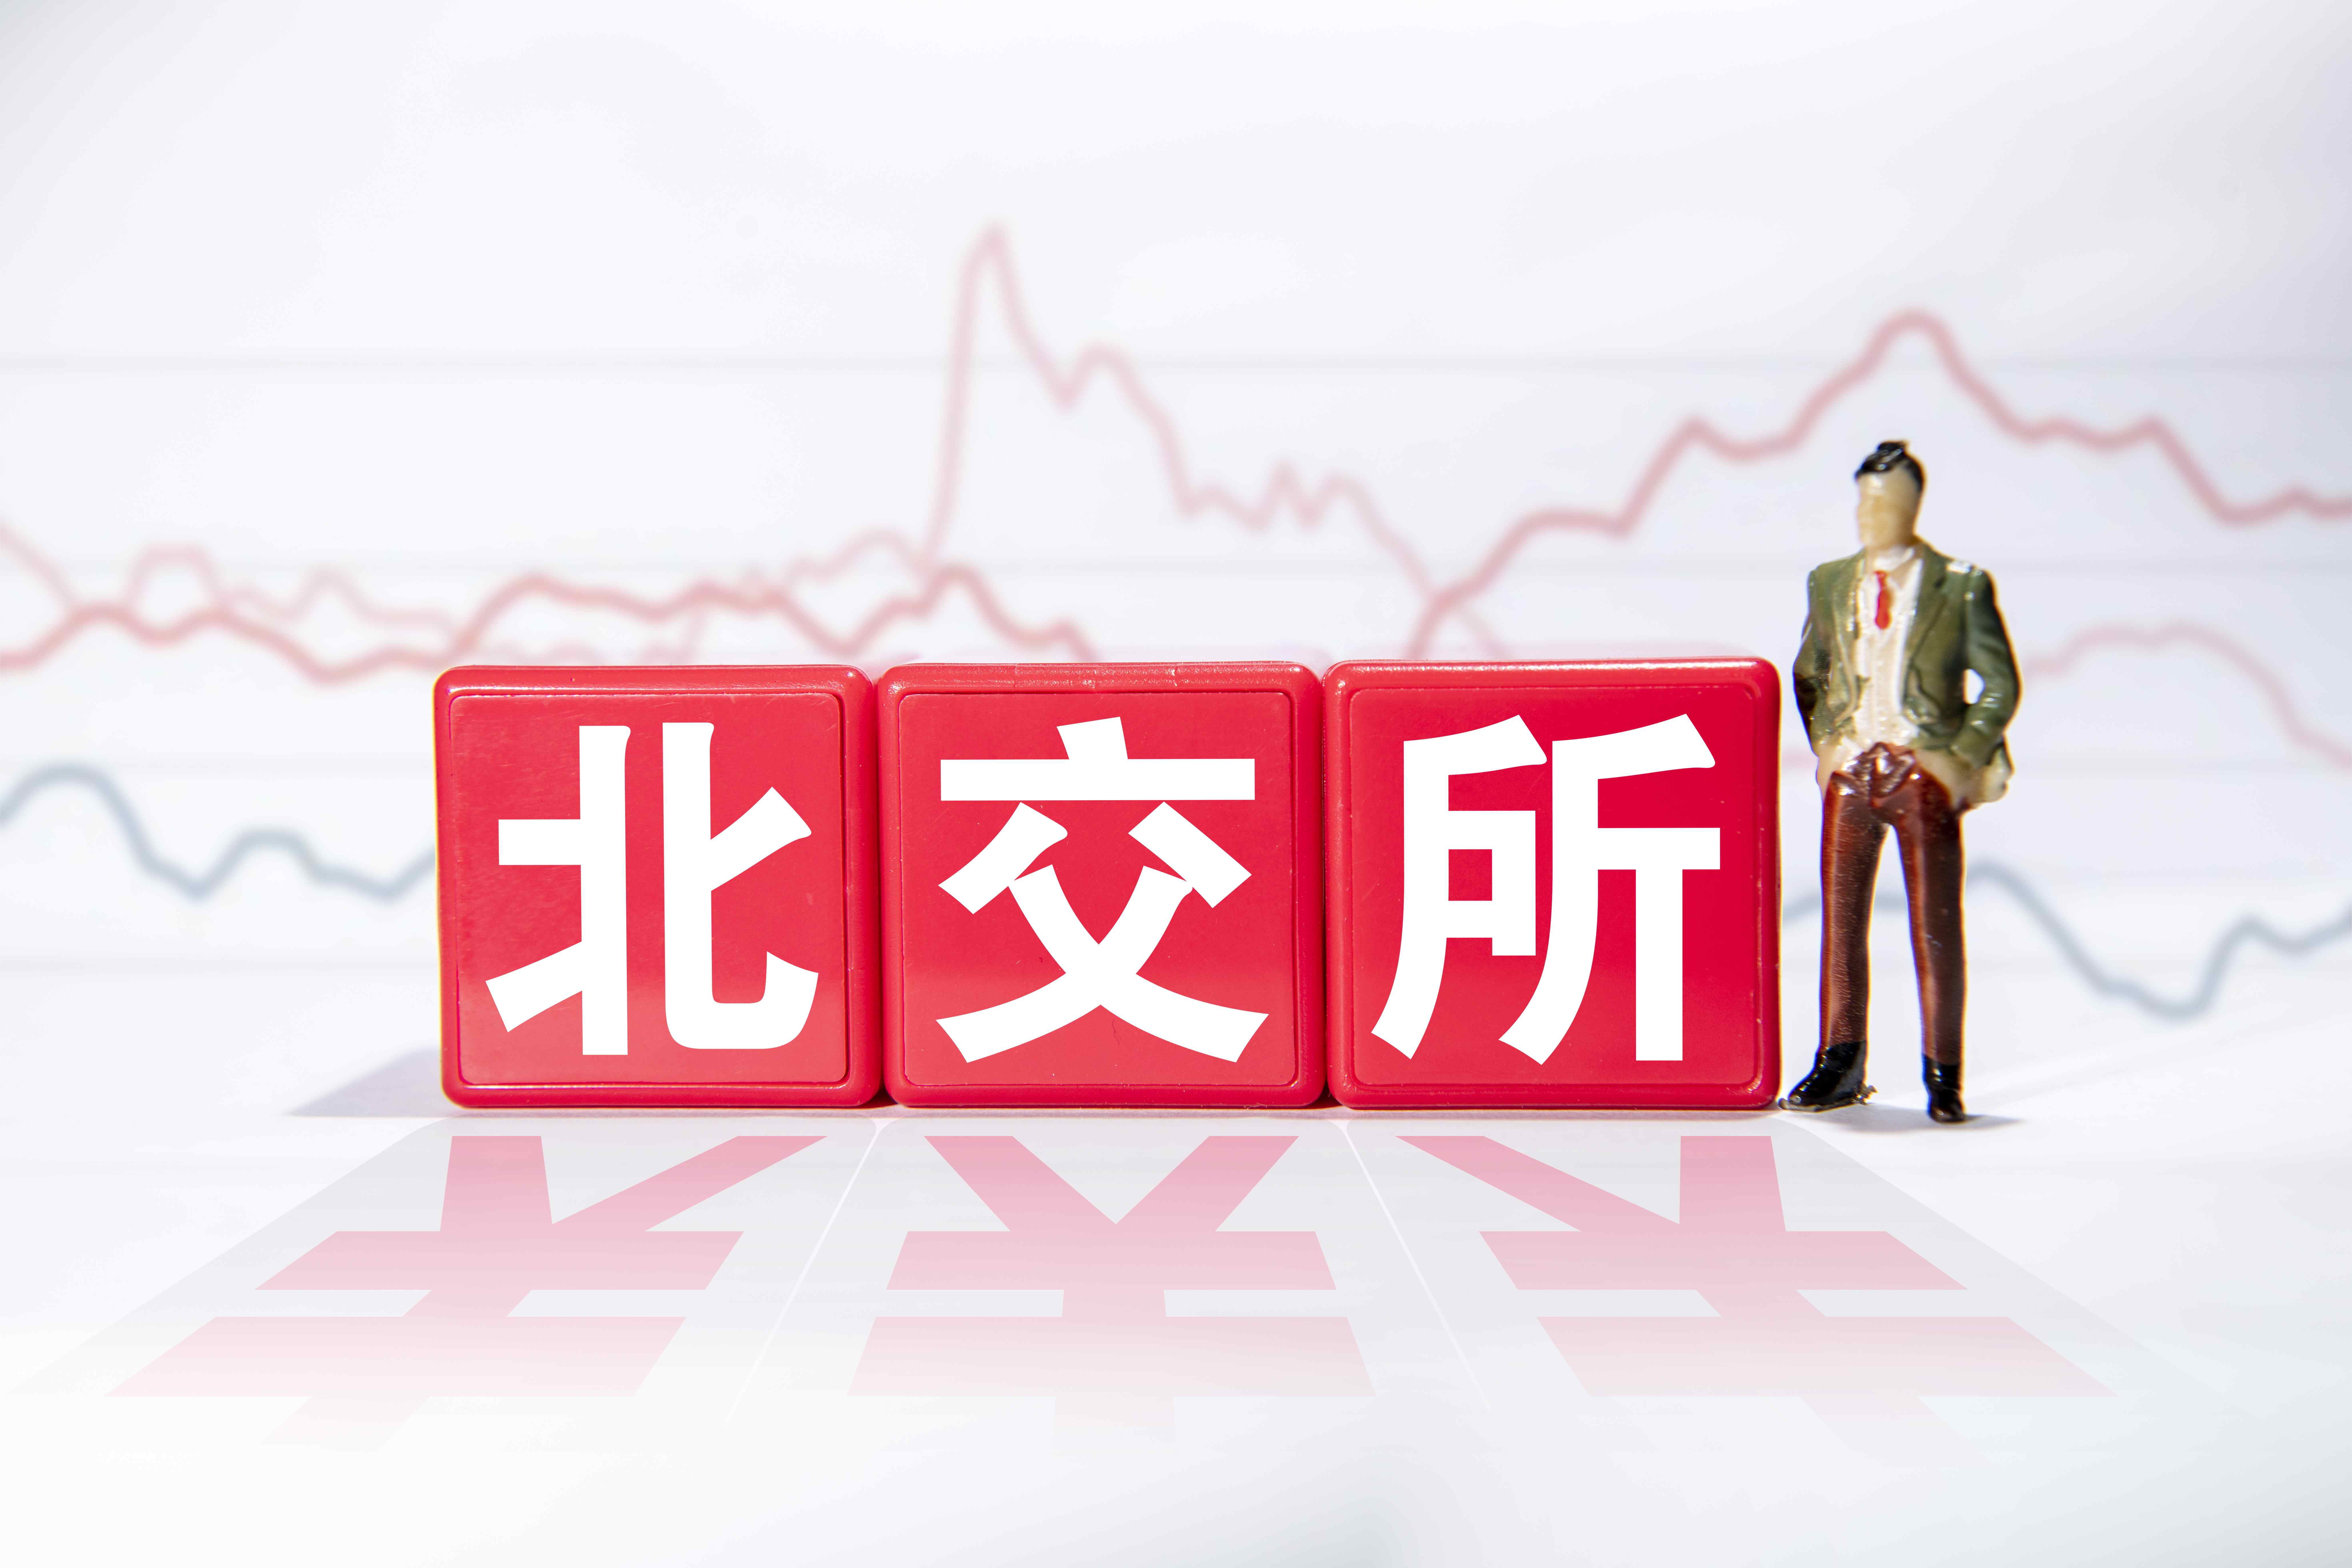 5月7日交银国企改革灵活配置混合A净值1.5595元 增长0.46%